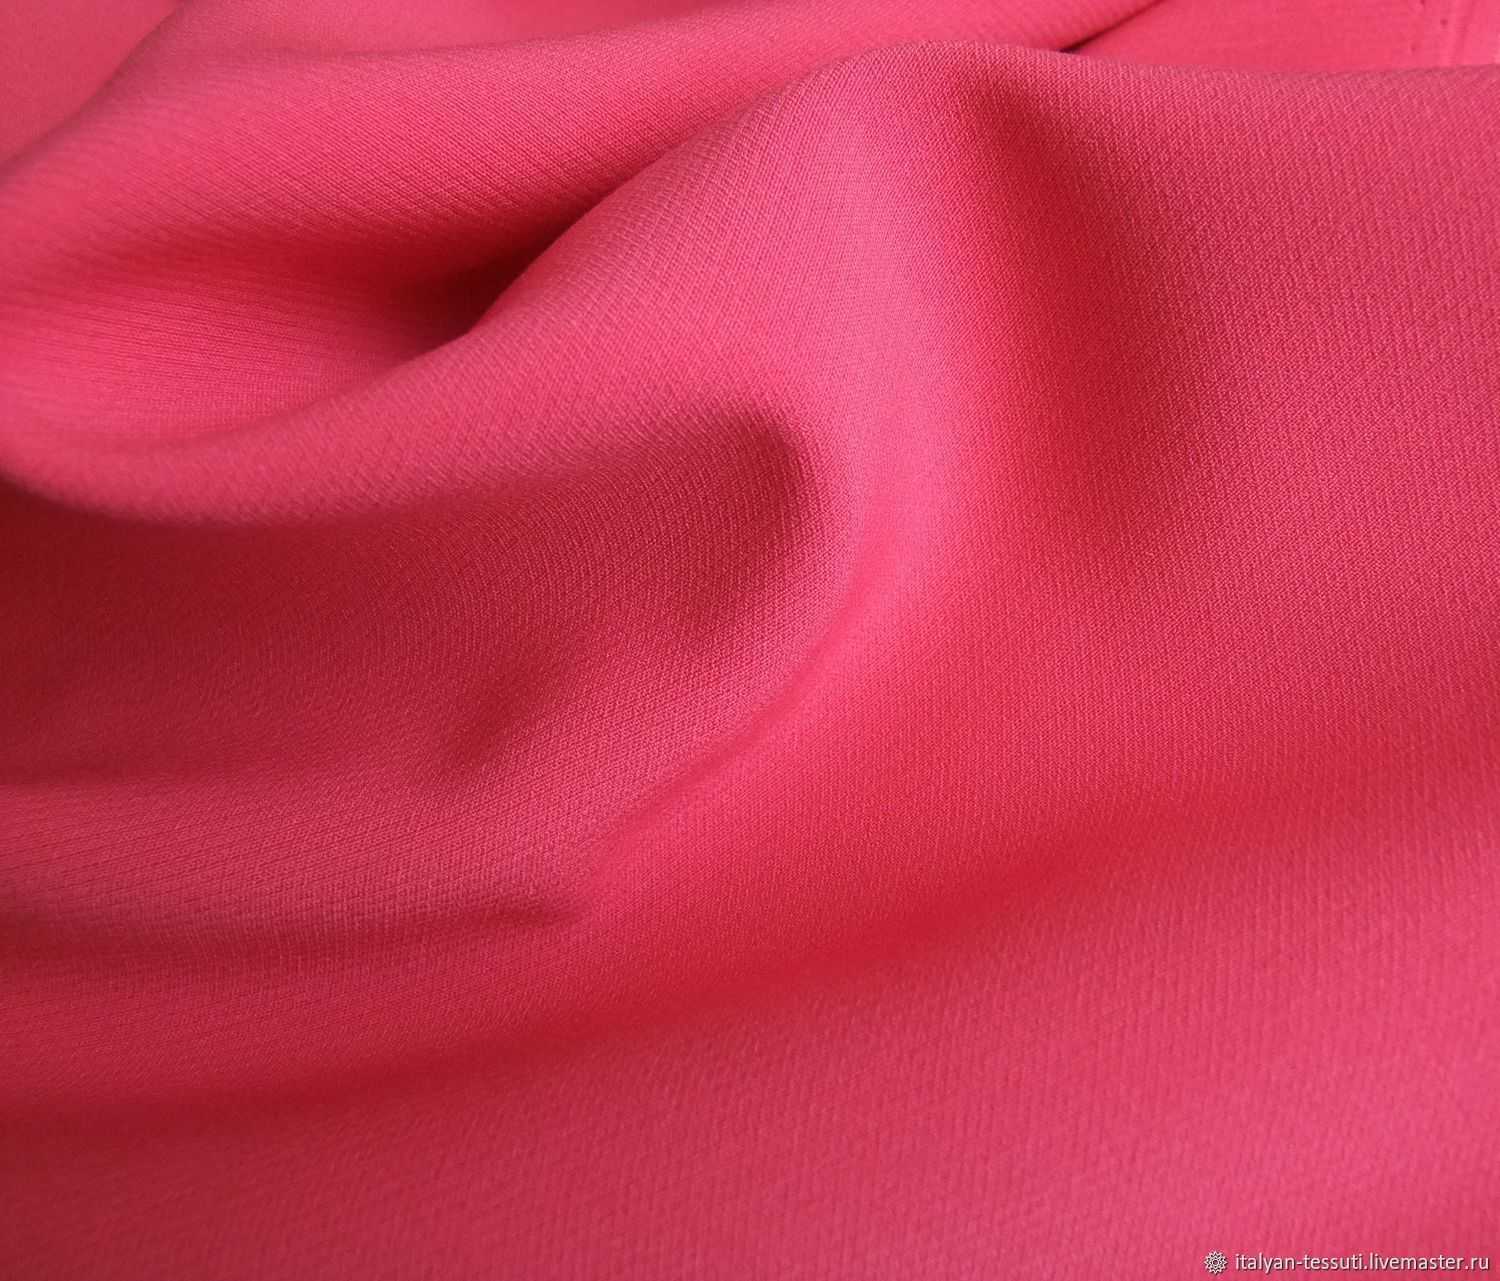 Постельное белье из крепа — выбор практичной хозяйки | текстильпрофи - полезные материалы о домашнем текстиле